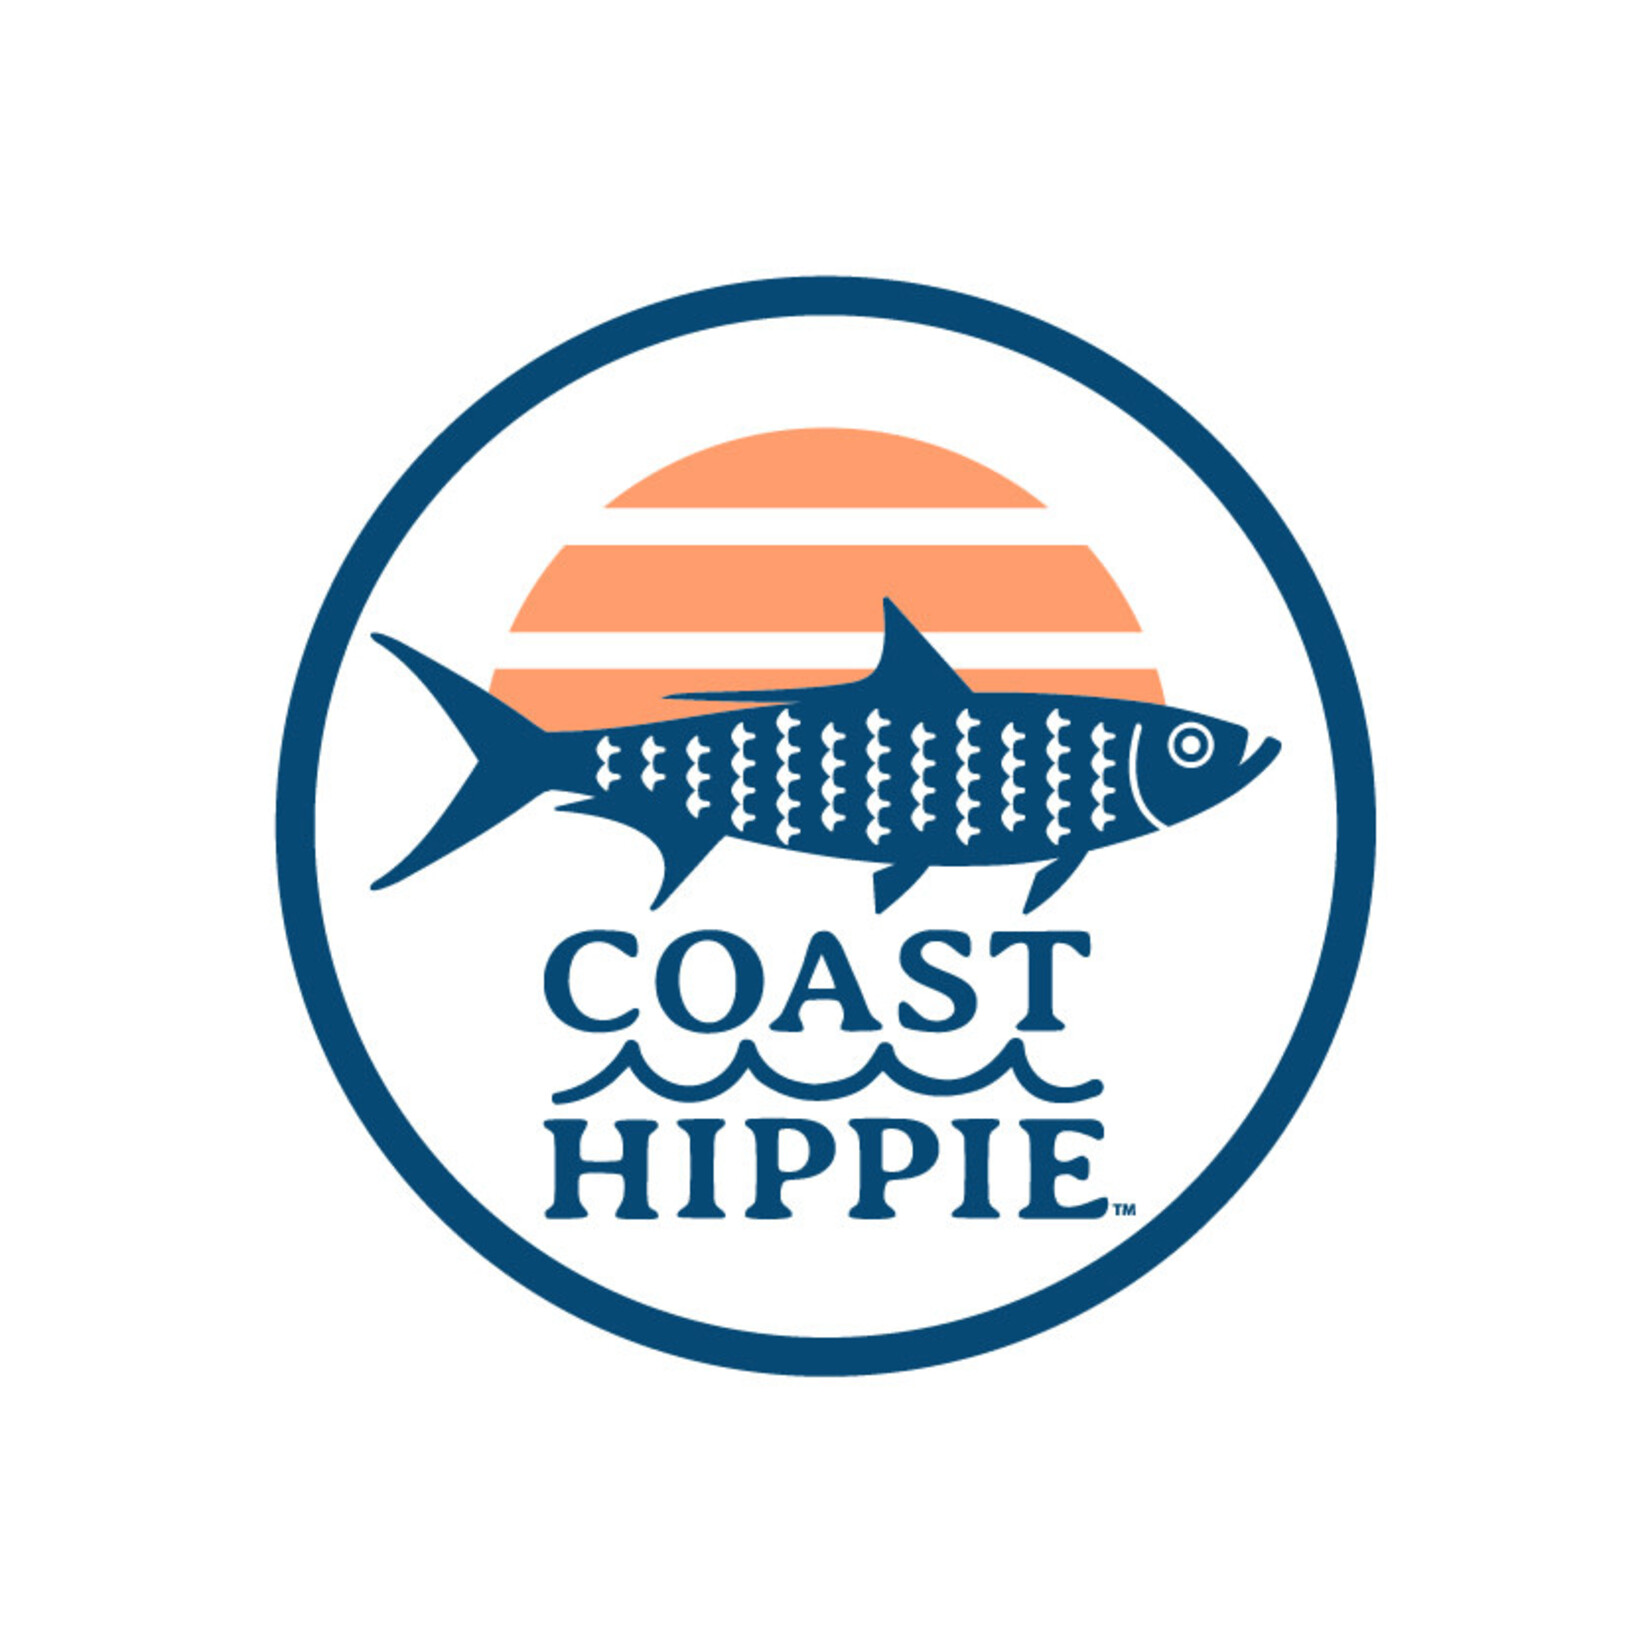 Coast Hippie Coast Hippie Stickers Tarpon